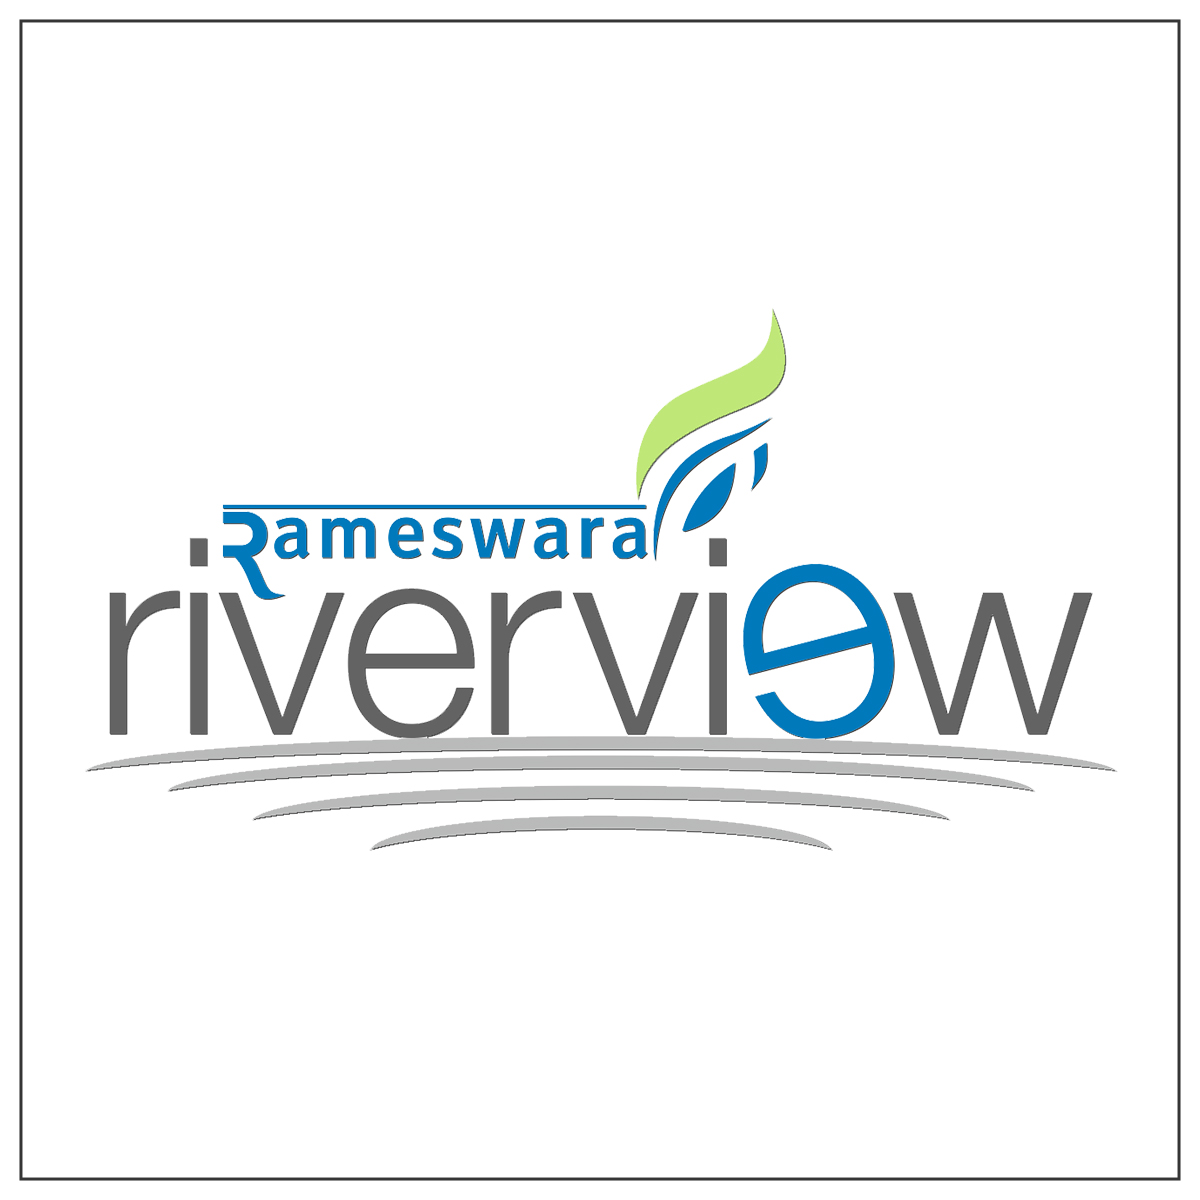 Rameswara Riverview 1200x1200 px Logo White BG